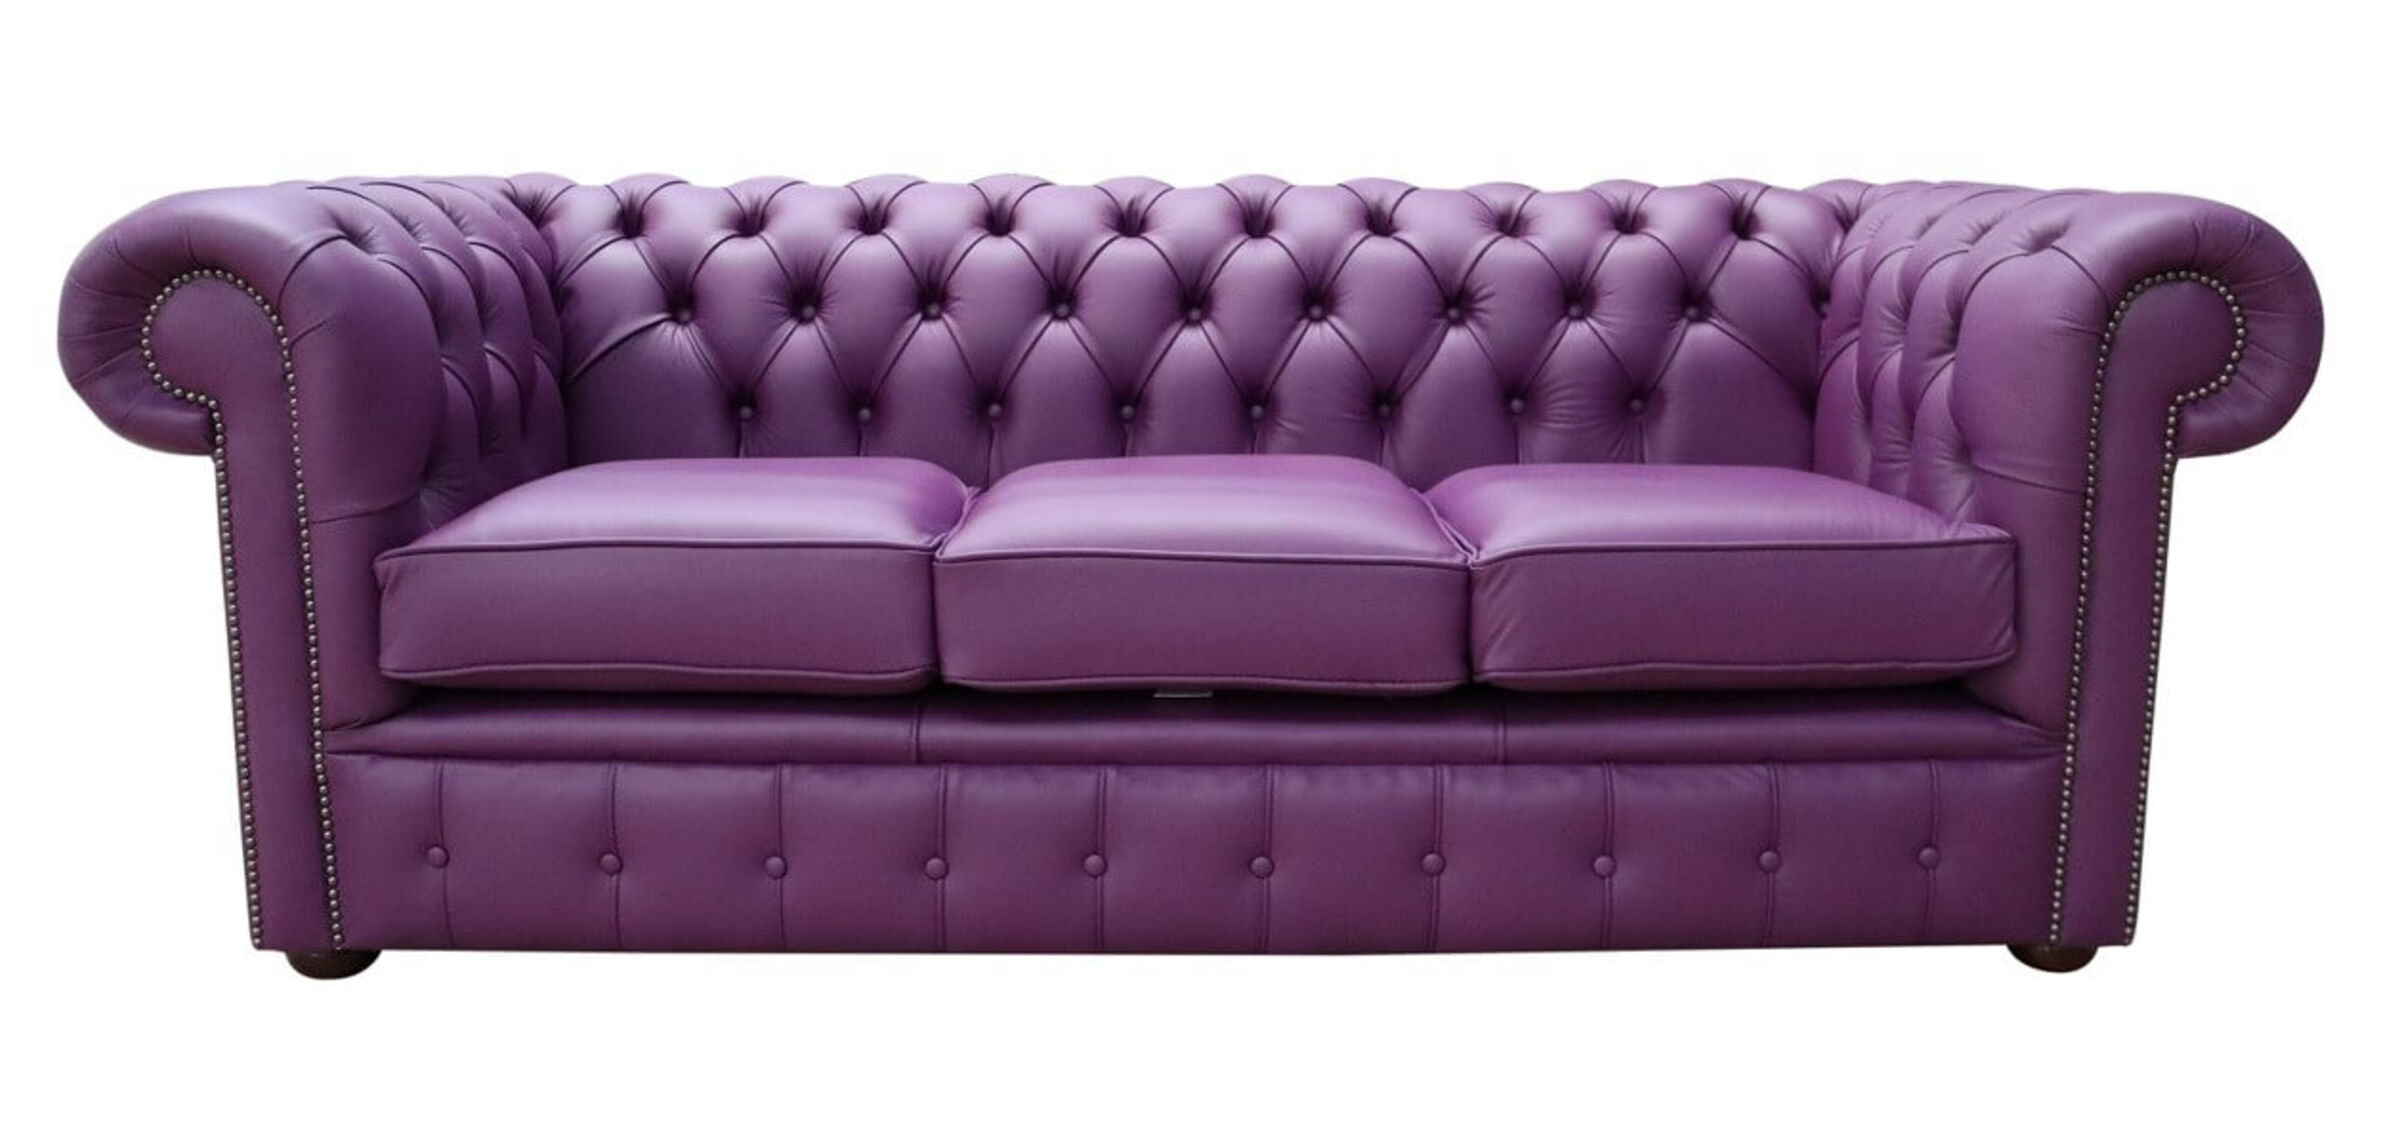 purple leather sofa living room